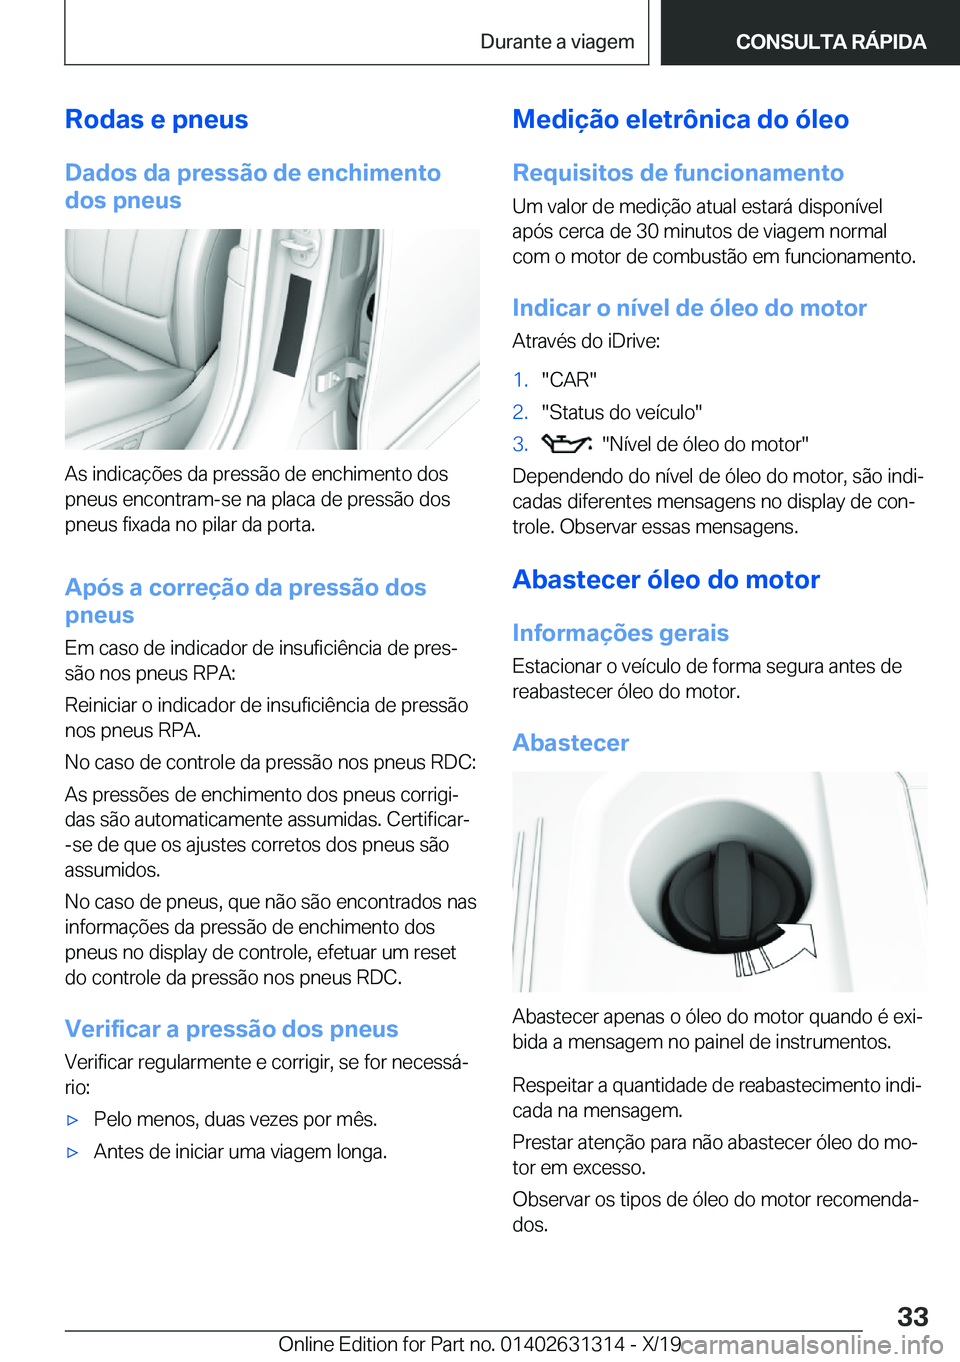 BMW M8 2020  Manual do condutor (in Portuguese) �R�o�d�a�s��e��p�n�e�u�s
�D�a�d�o�s��d�a��p�r�e�s�s�ã�o��d�e��e�n�c�h�i�m�e�n�t�o
�d�o�s��p�n�e�u�s
�A�s��i�n�d�i�c�a�